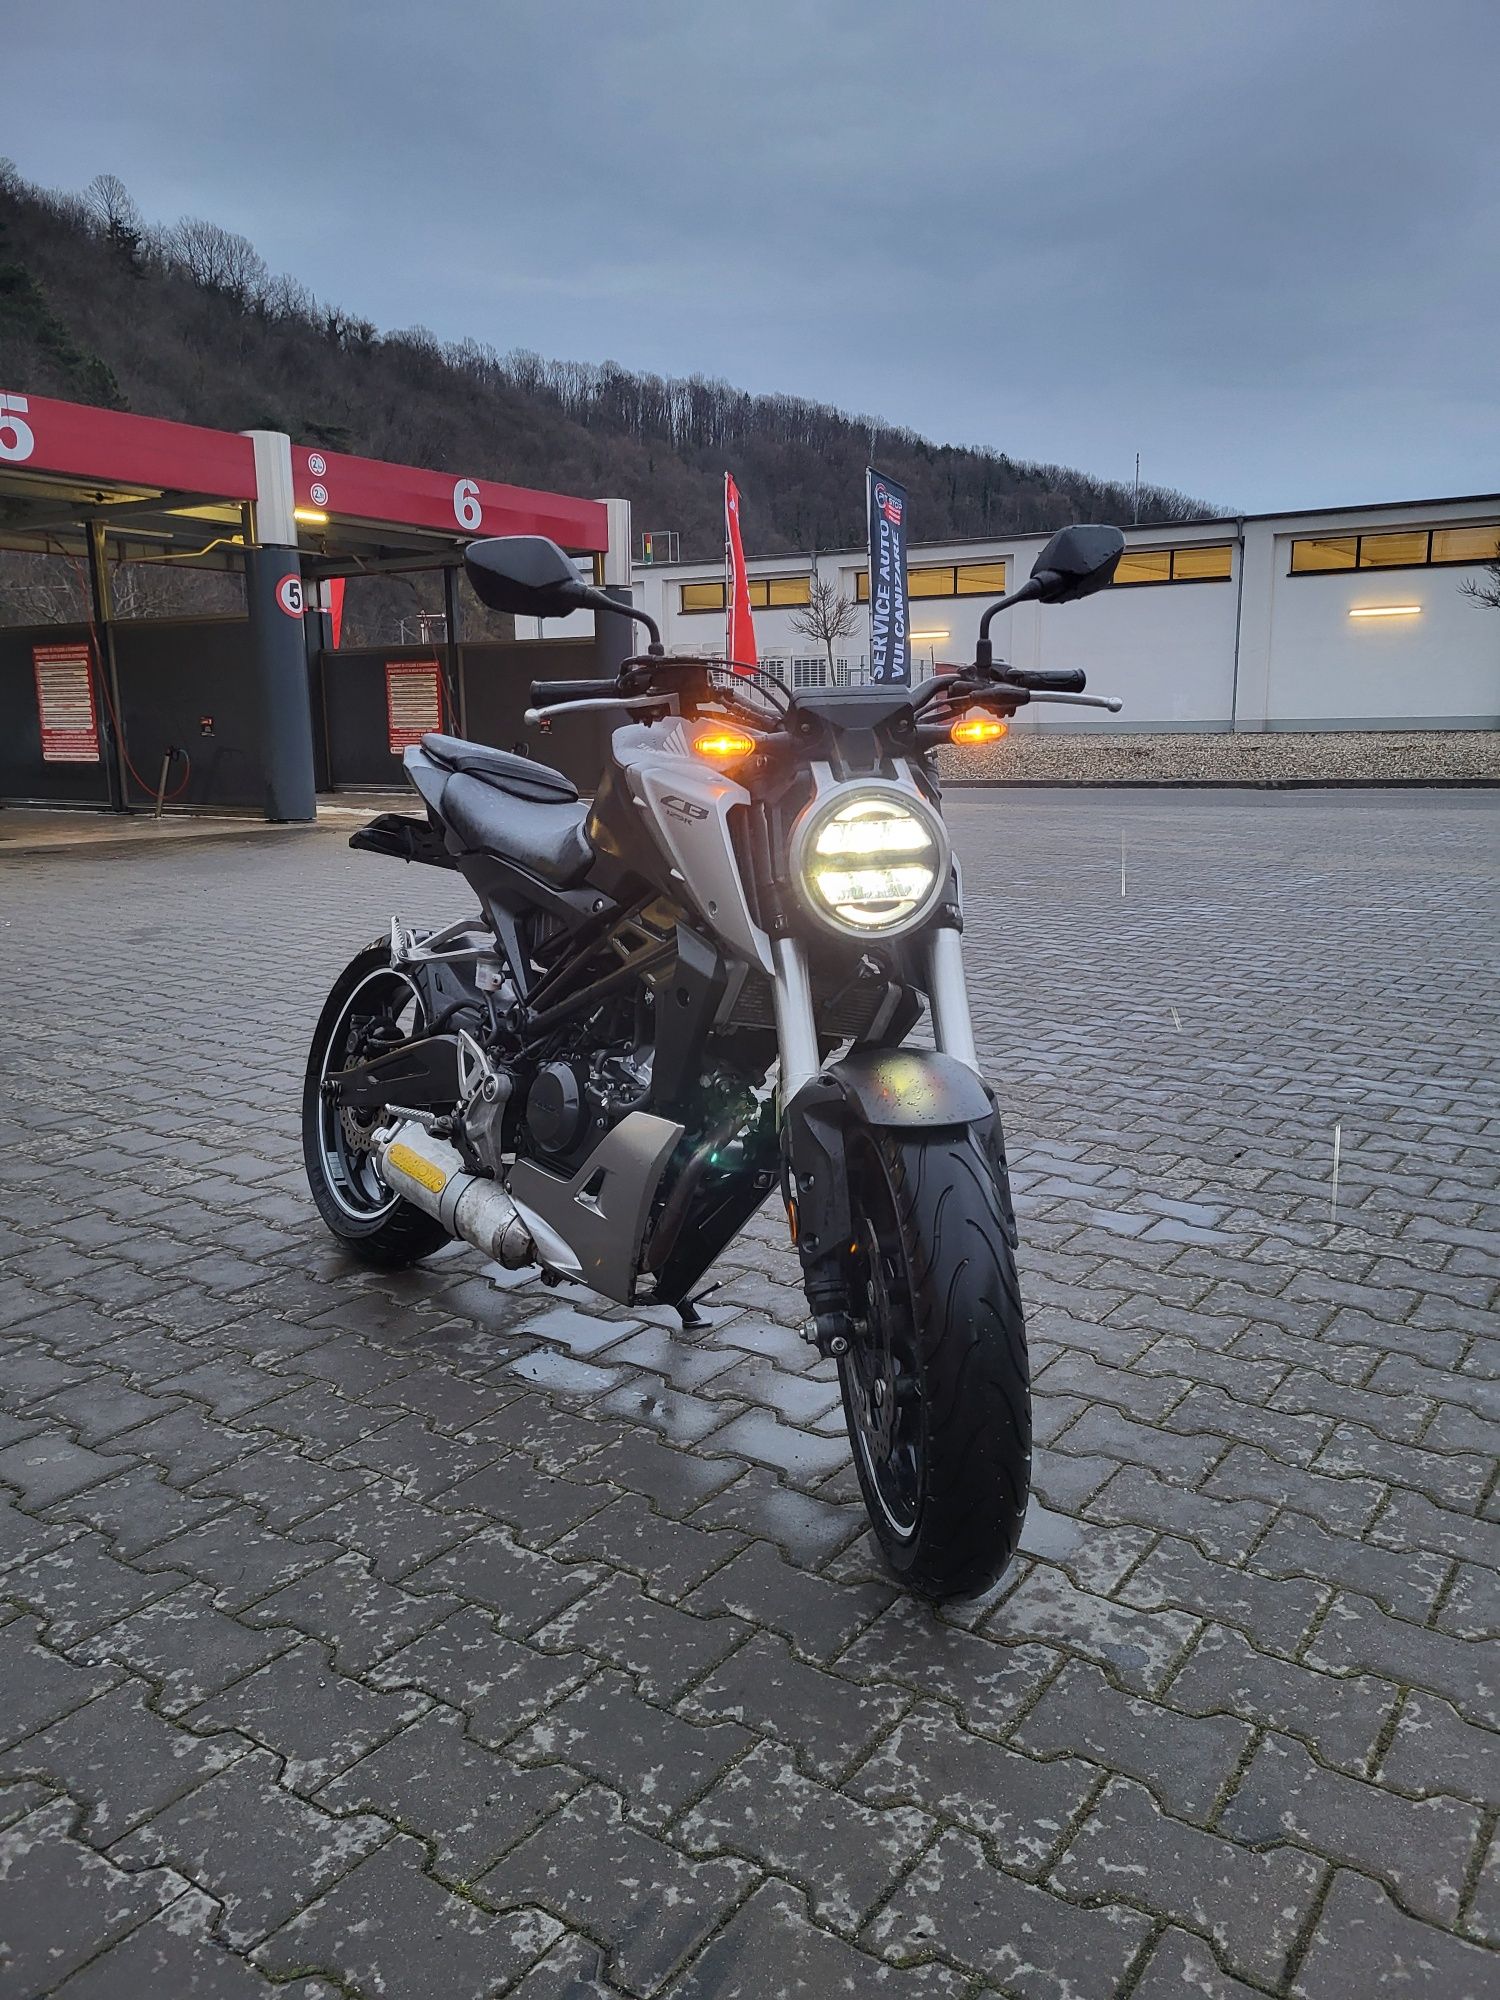 Honda CB 125 R 2018